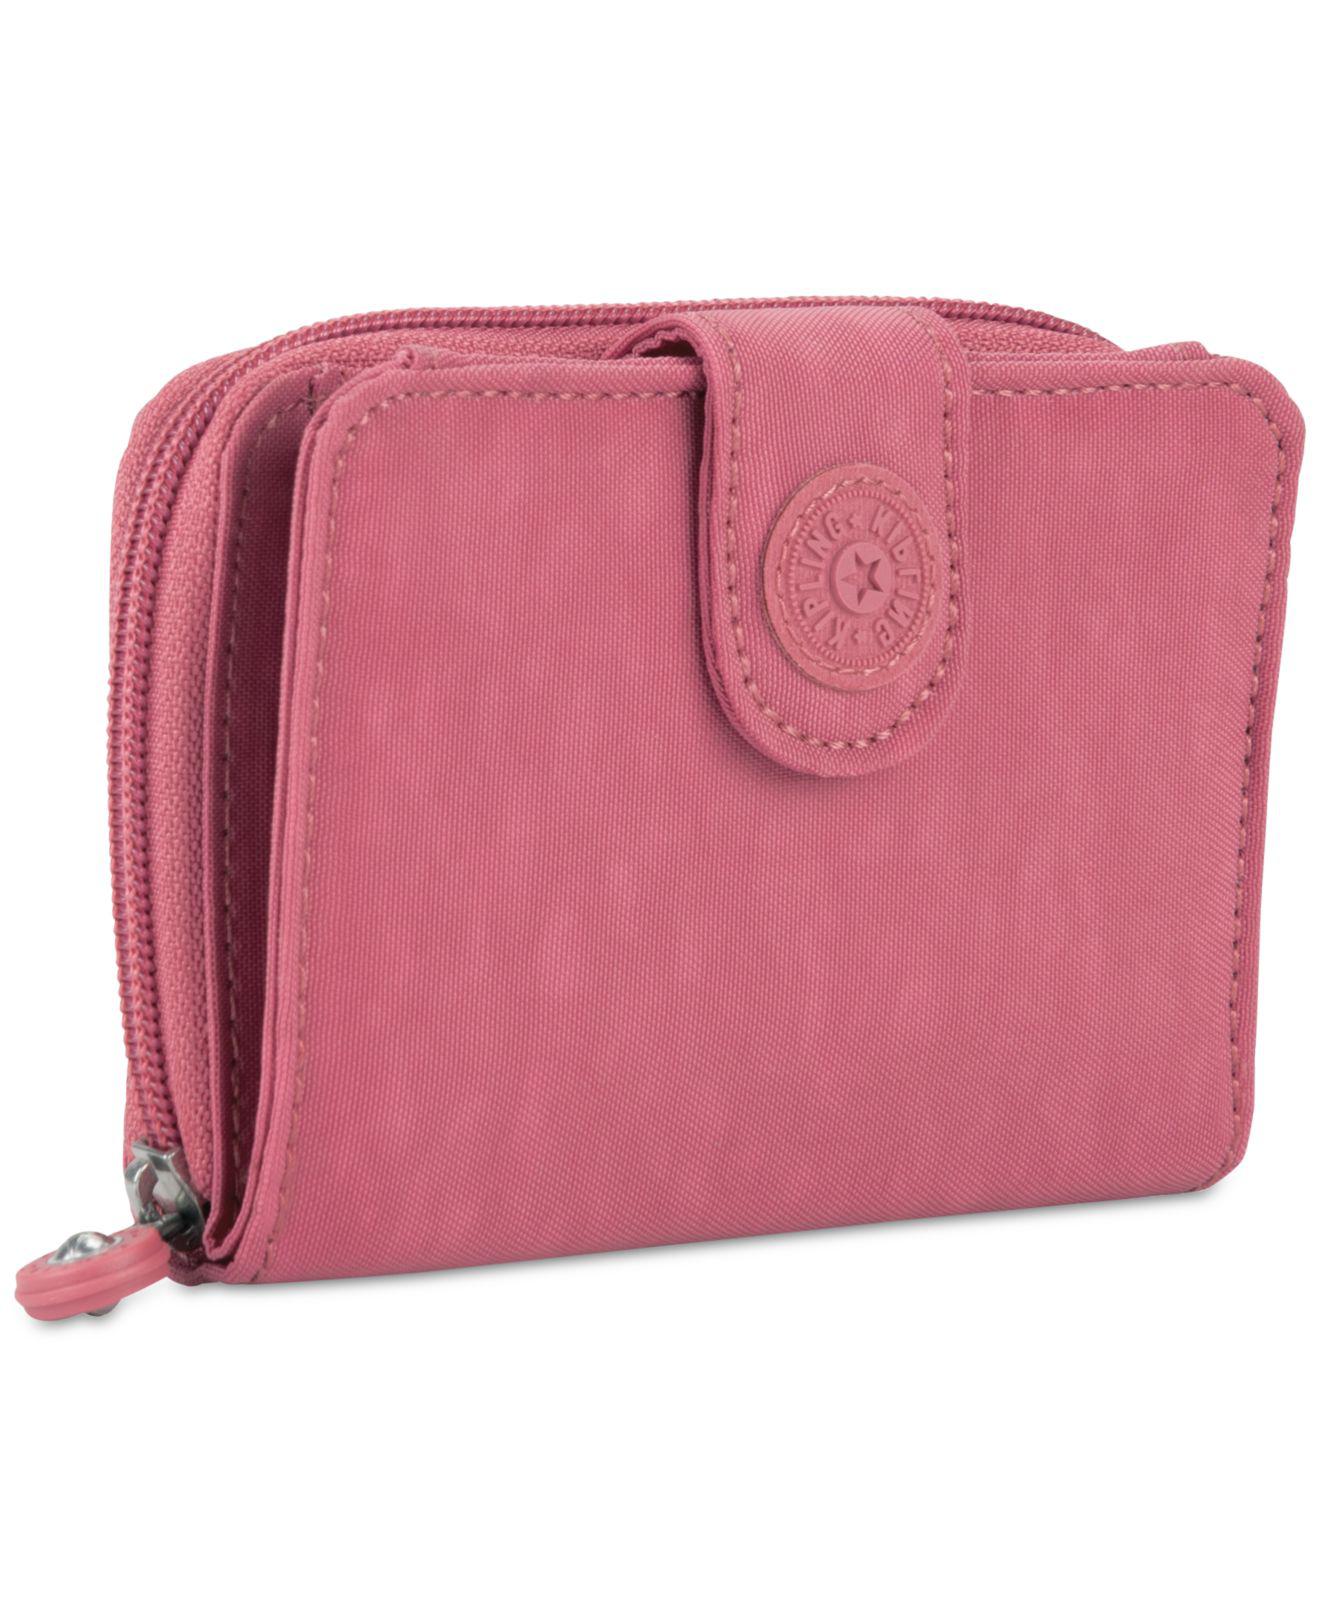 Kipling New Money Wallet in Pink | Lyst